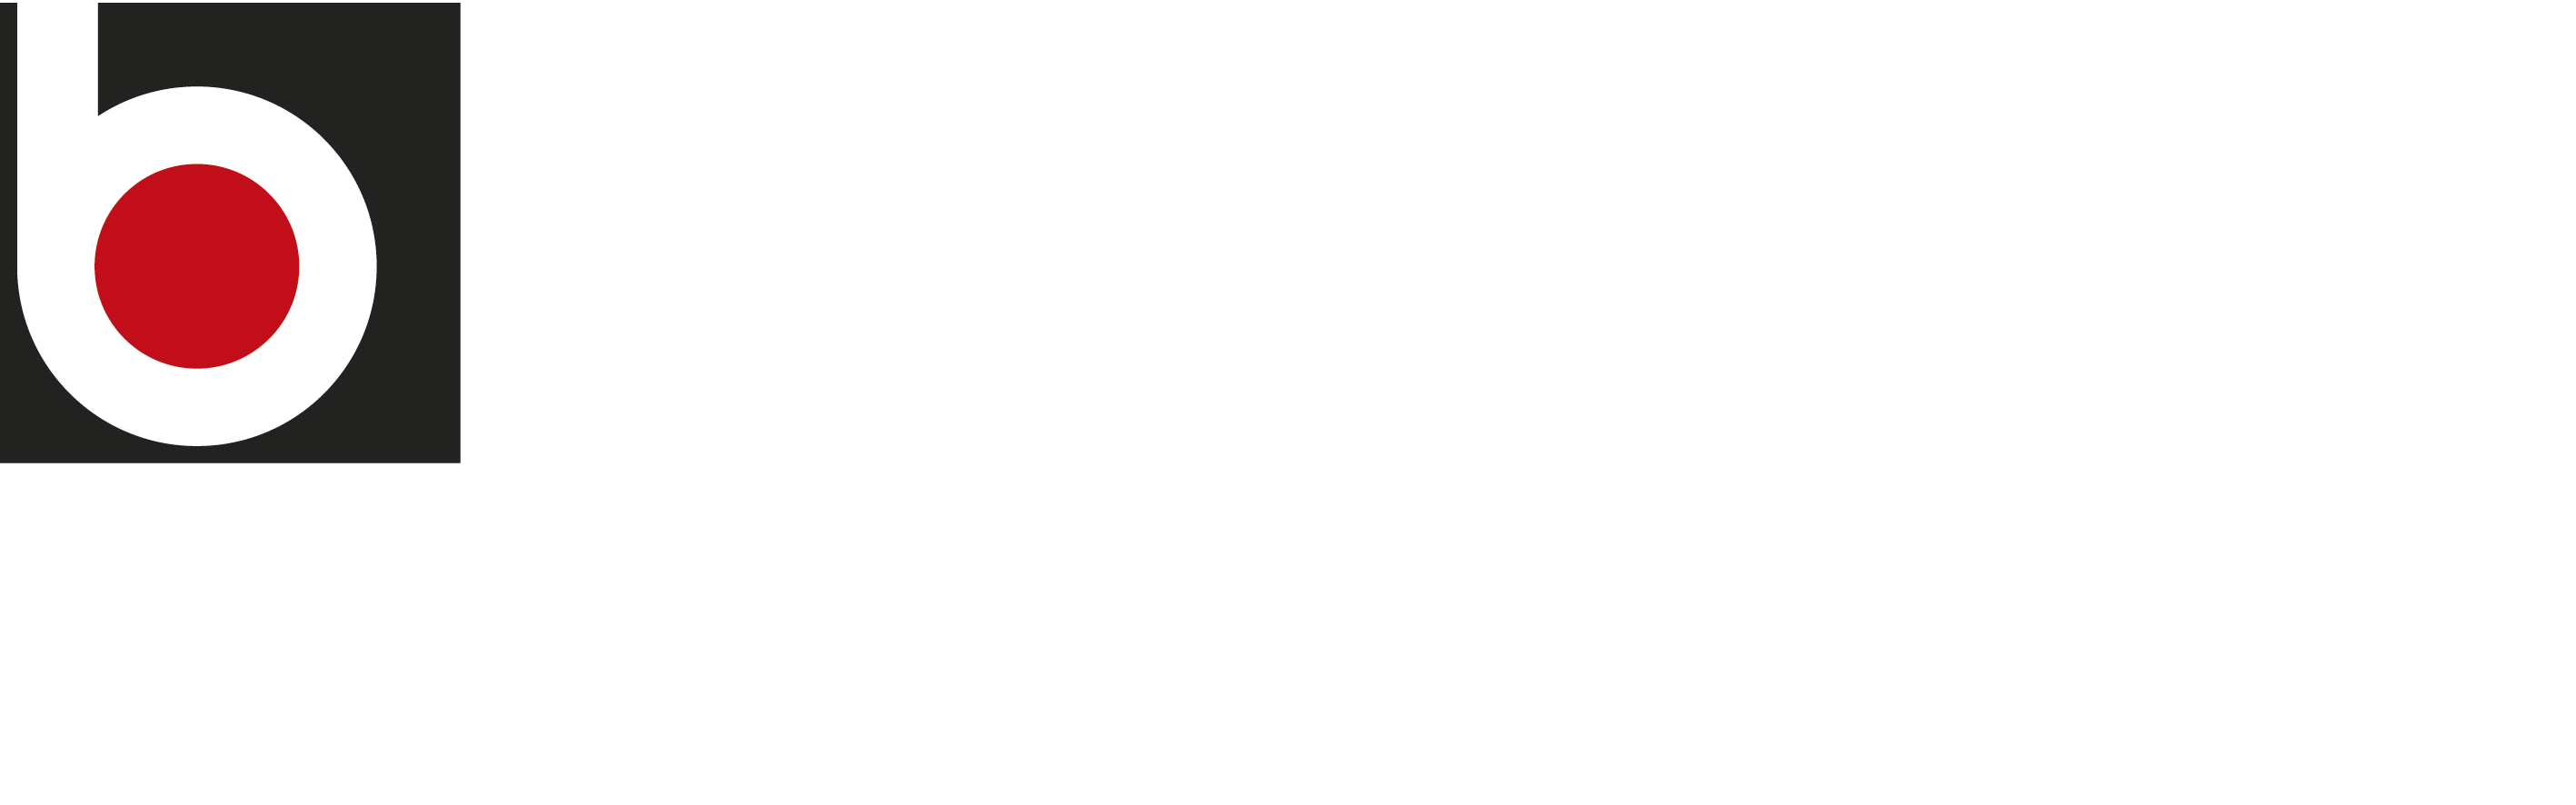 Meltex